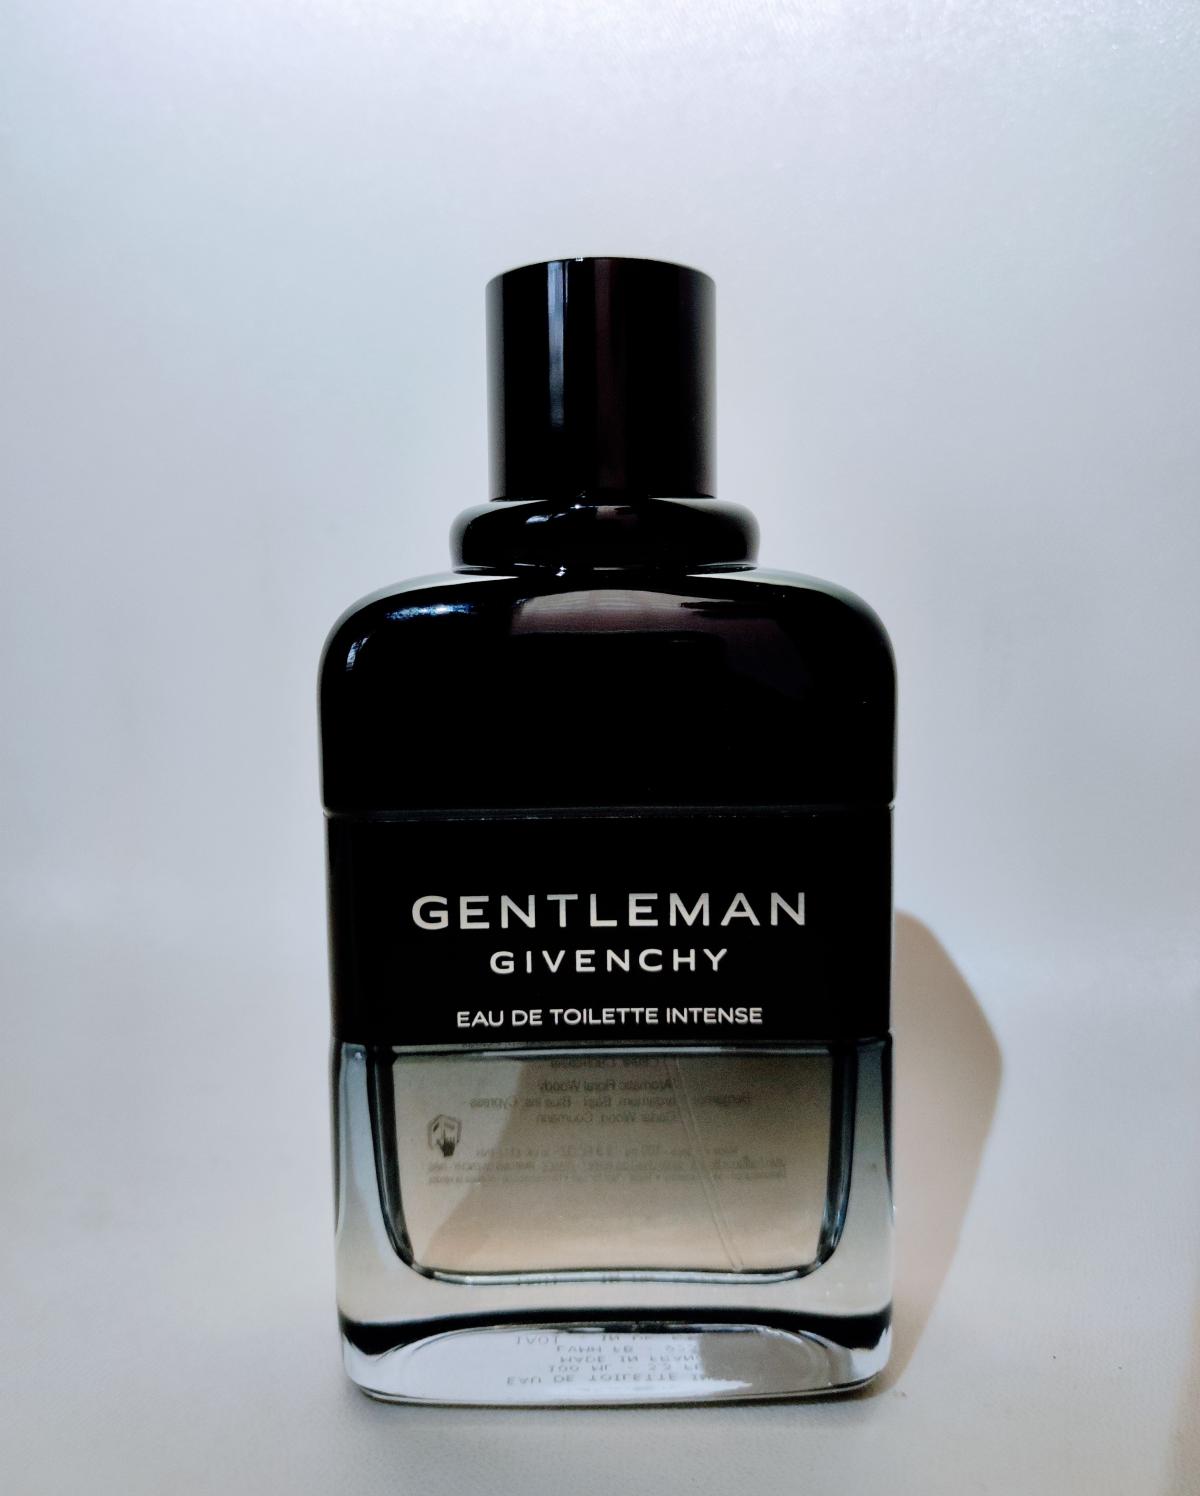 Gentleman Eau de Toilette Intense Givenchy cologne - a fragrance for ...